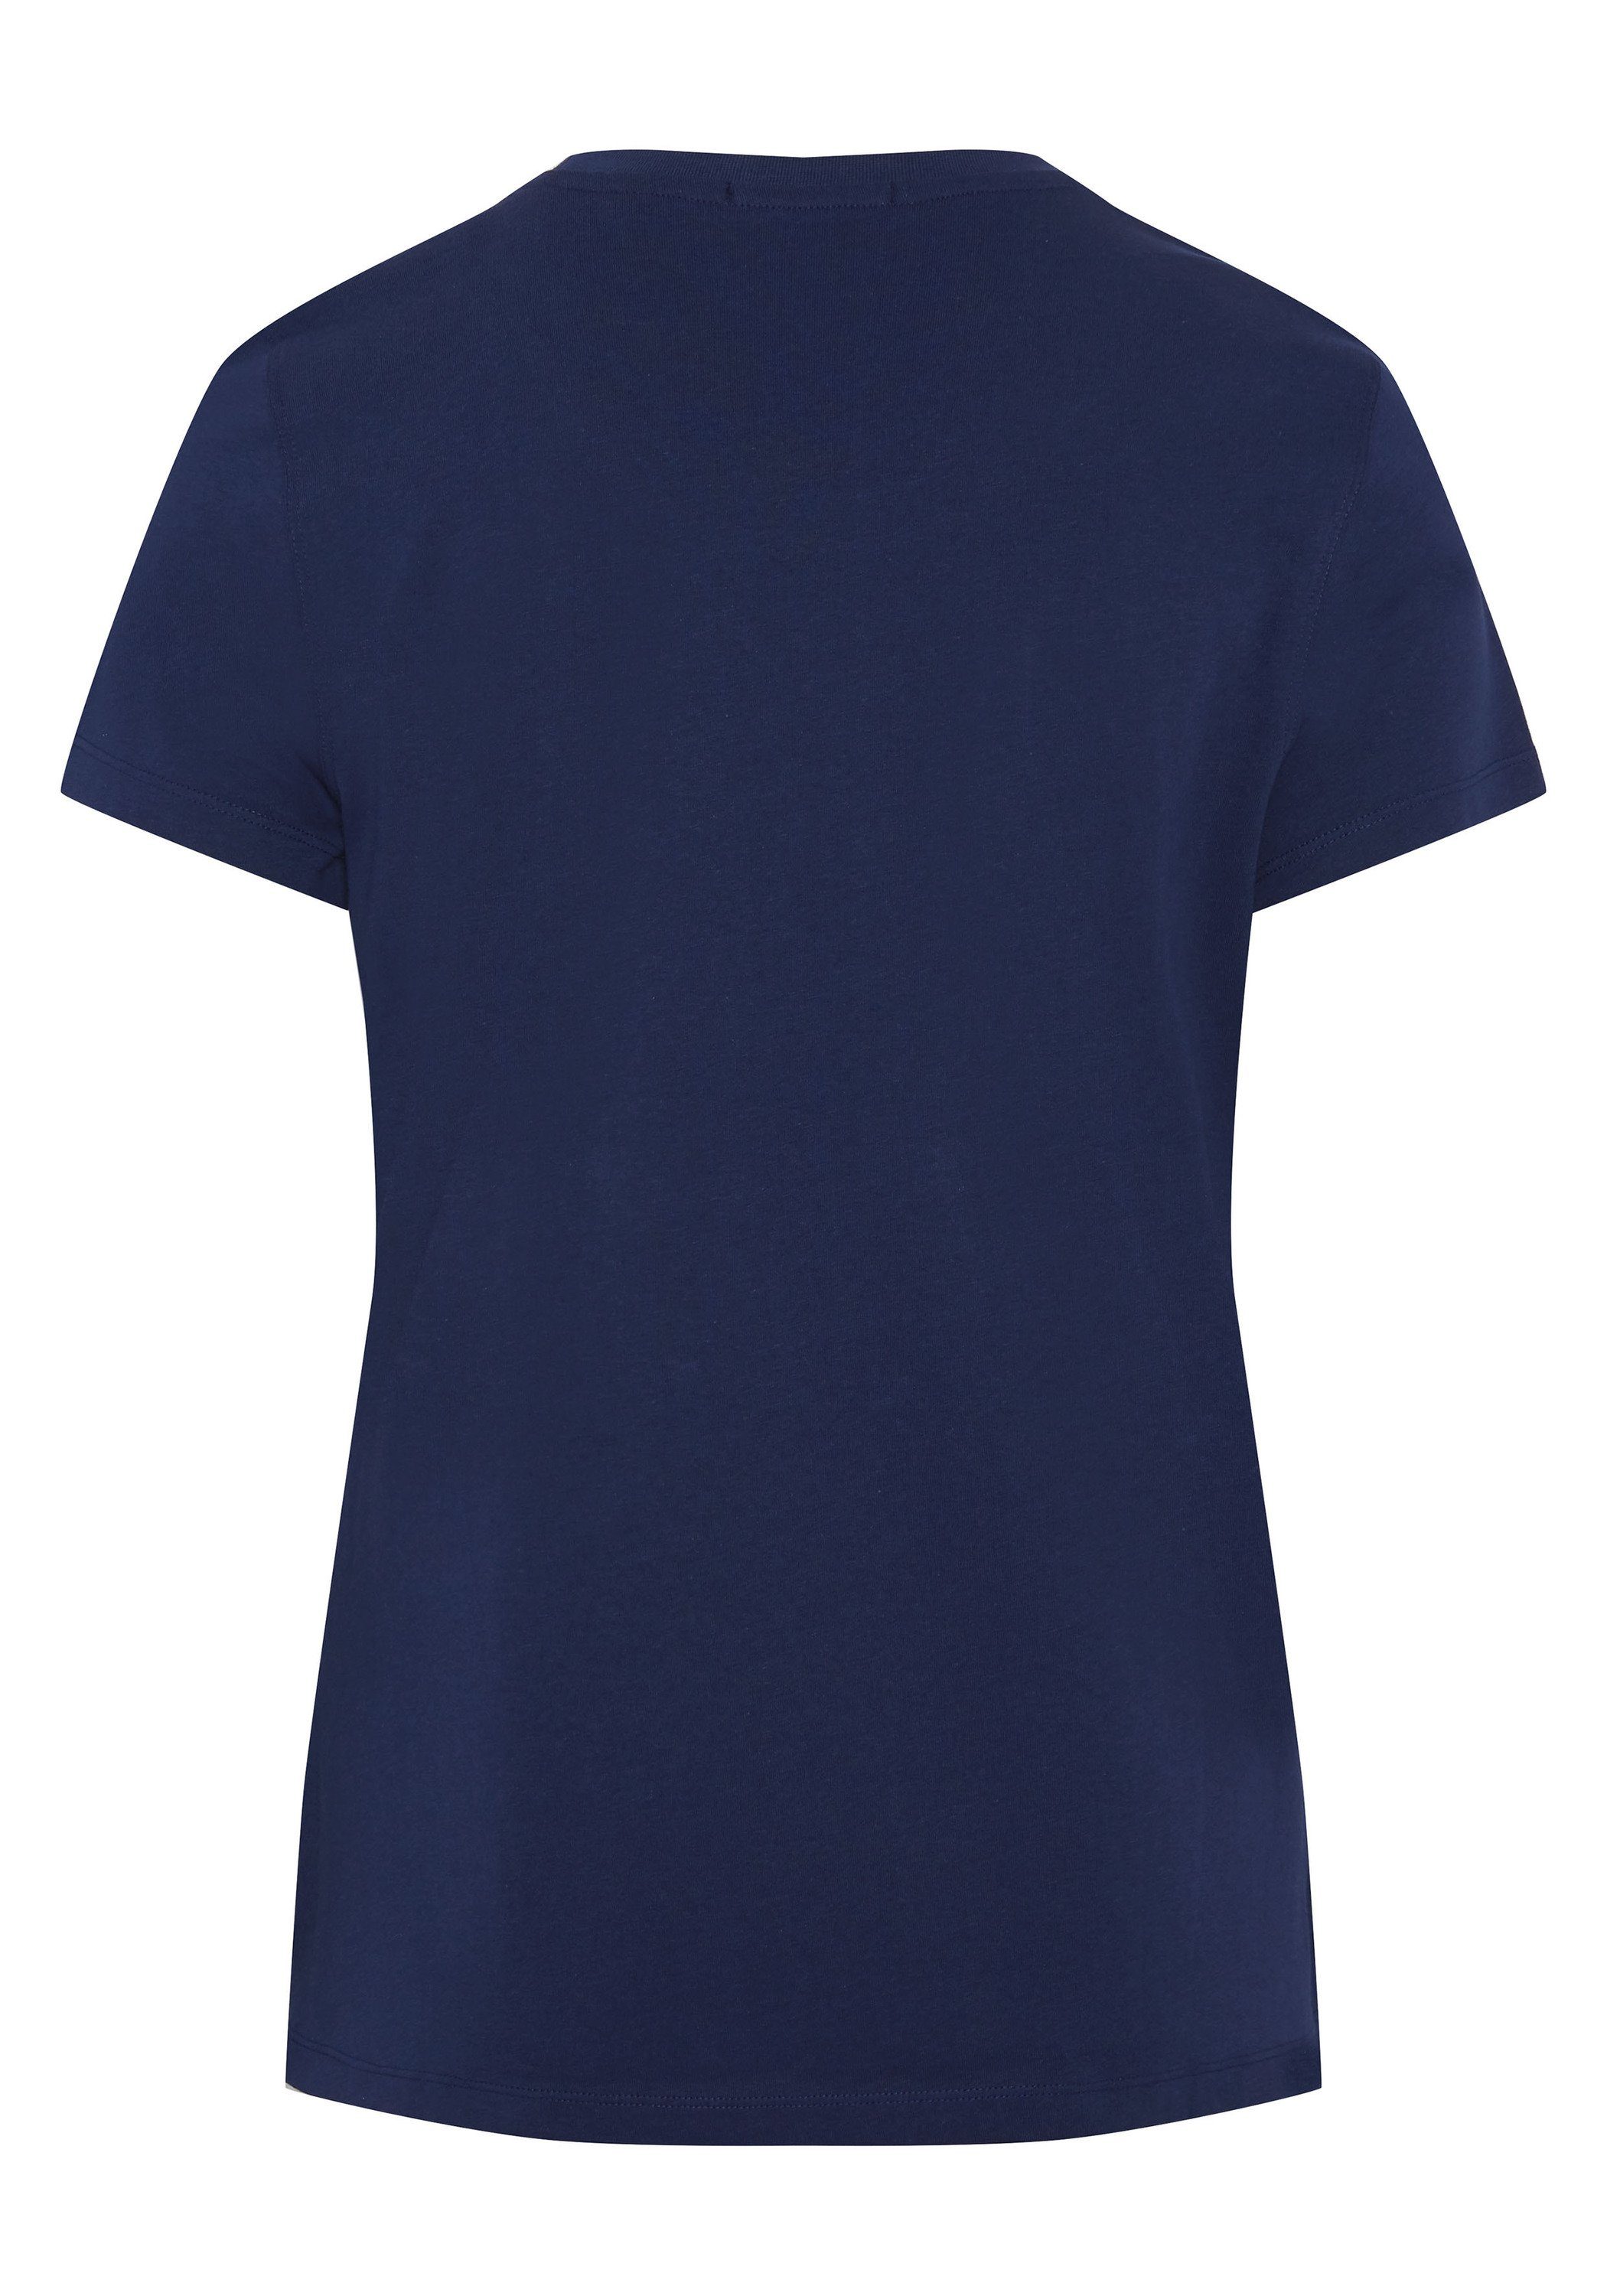 Print-Shirt T-Shirt 19-3933 Blue Chiemsee 1 Medieval mit Schriftzug